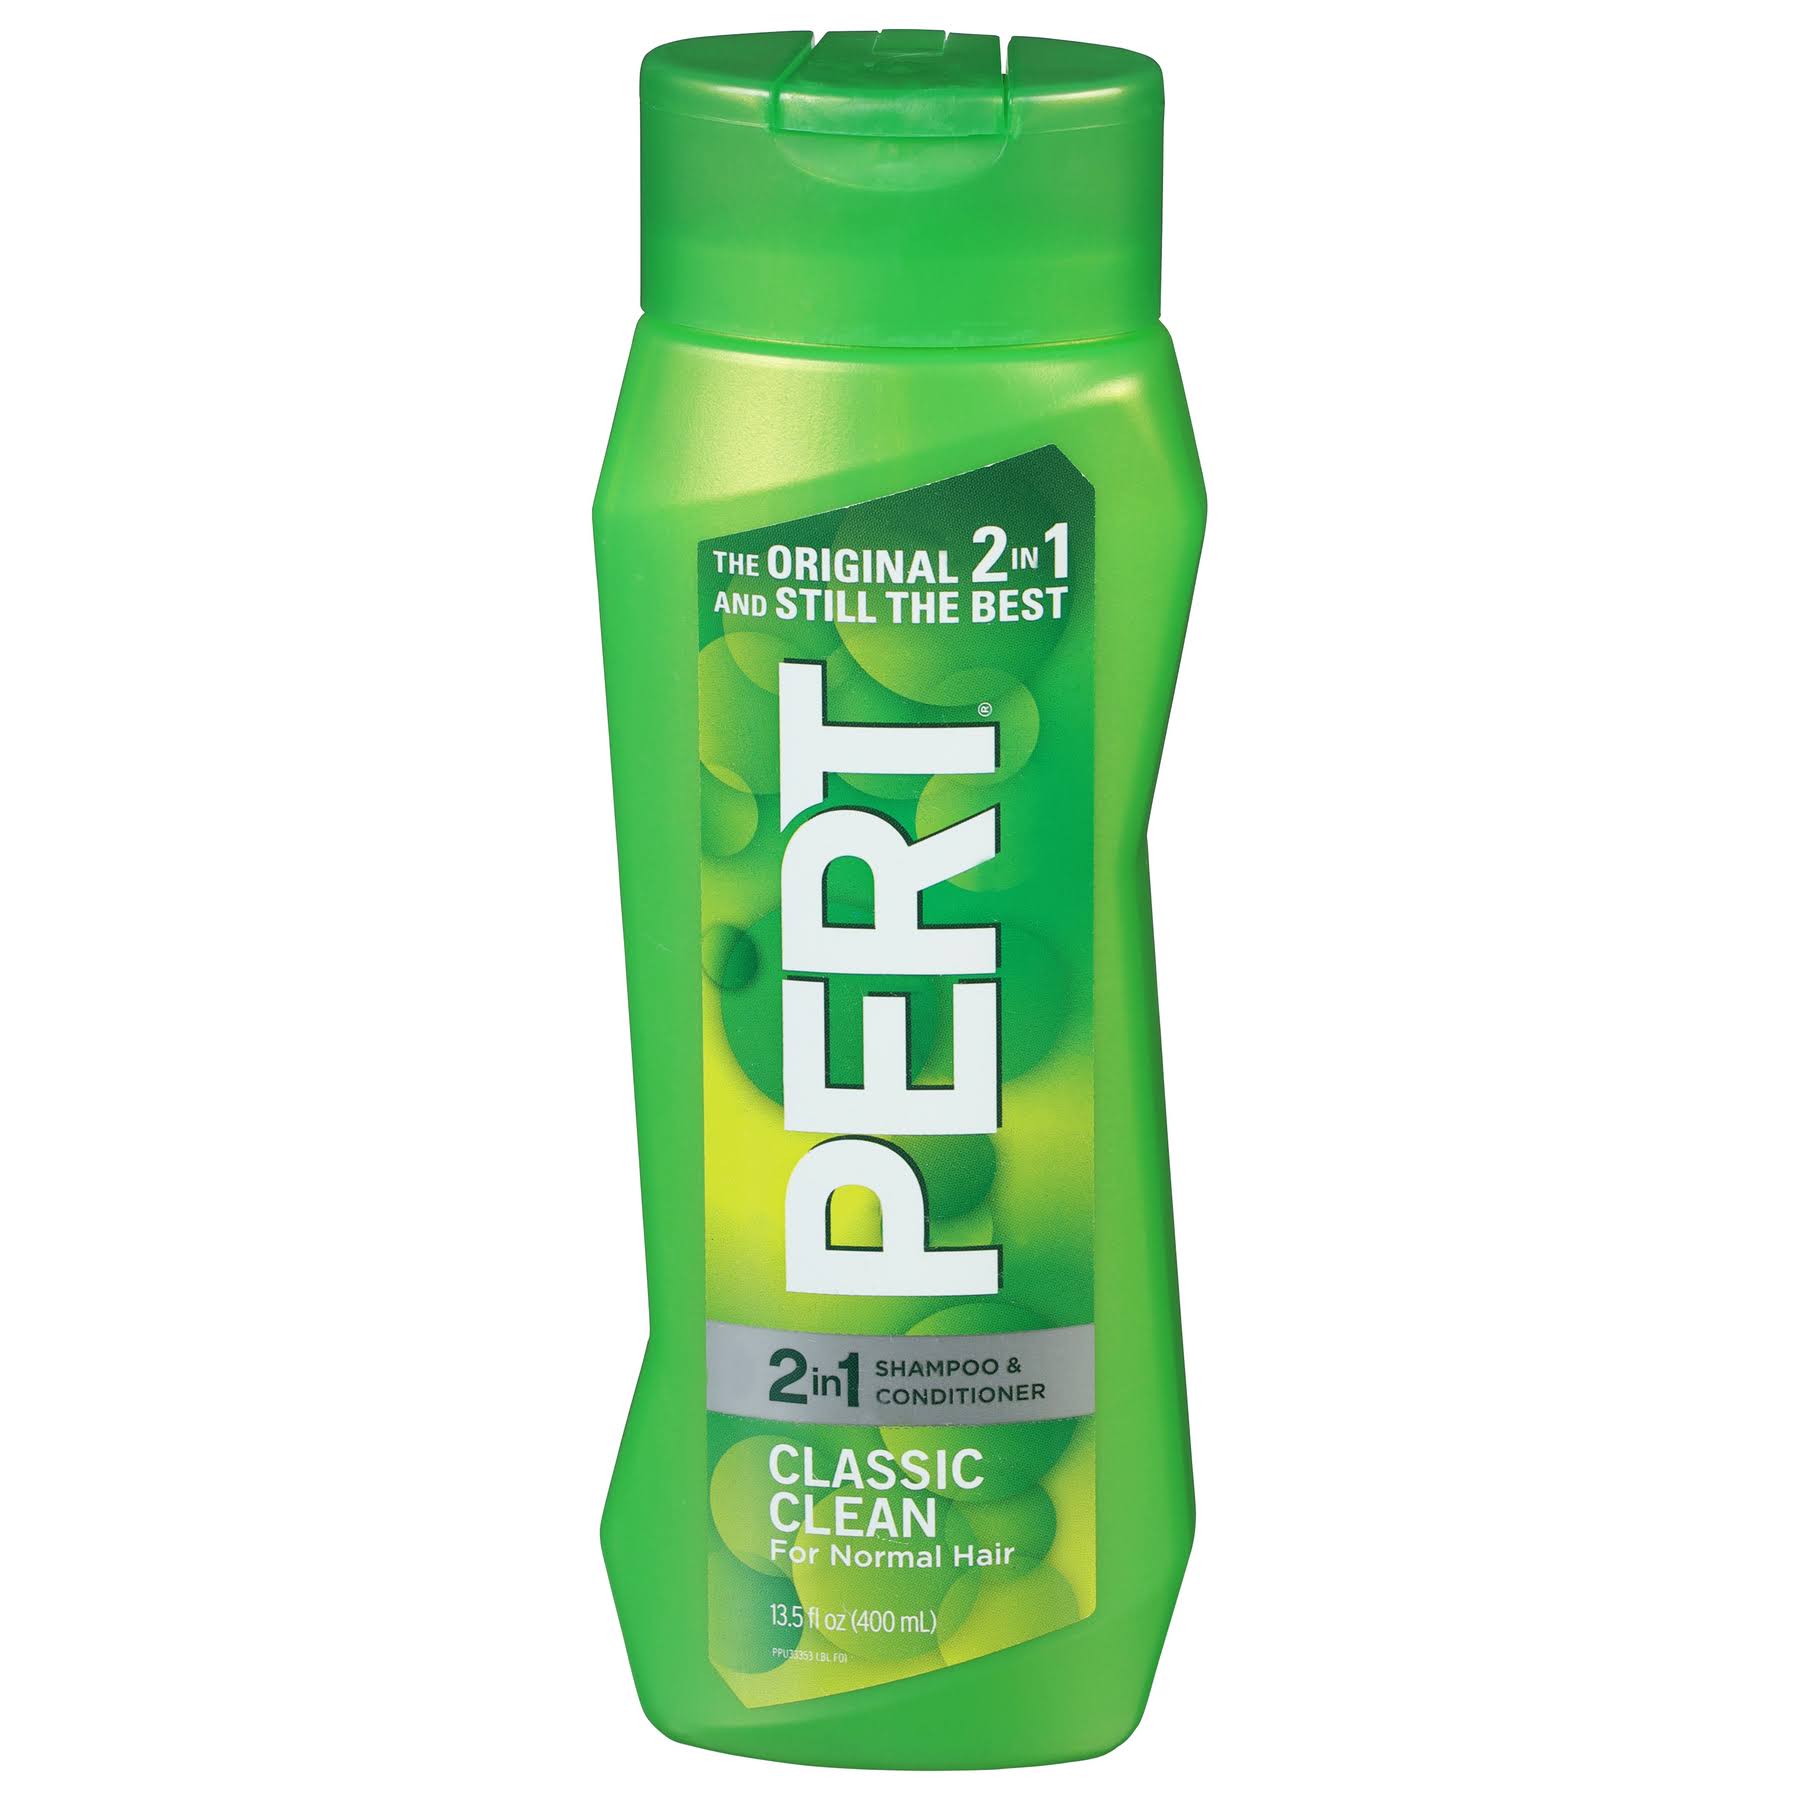 Pert Plus Classic Clean 2 In 1 Shampoo Plus Conditioner - 13.5oz